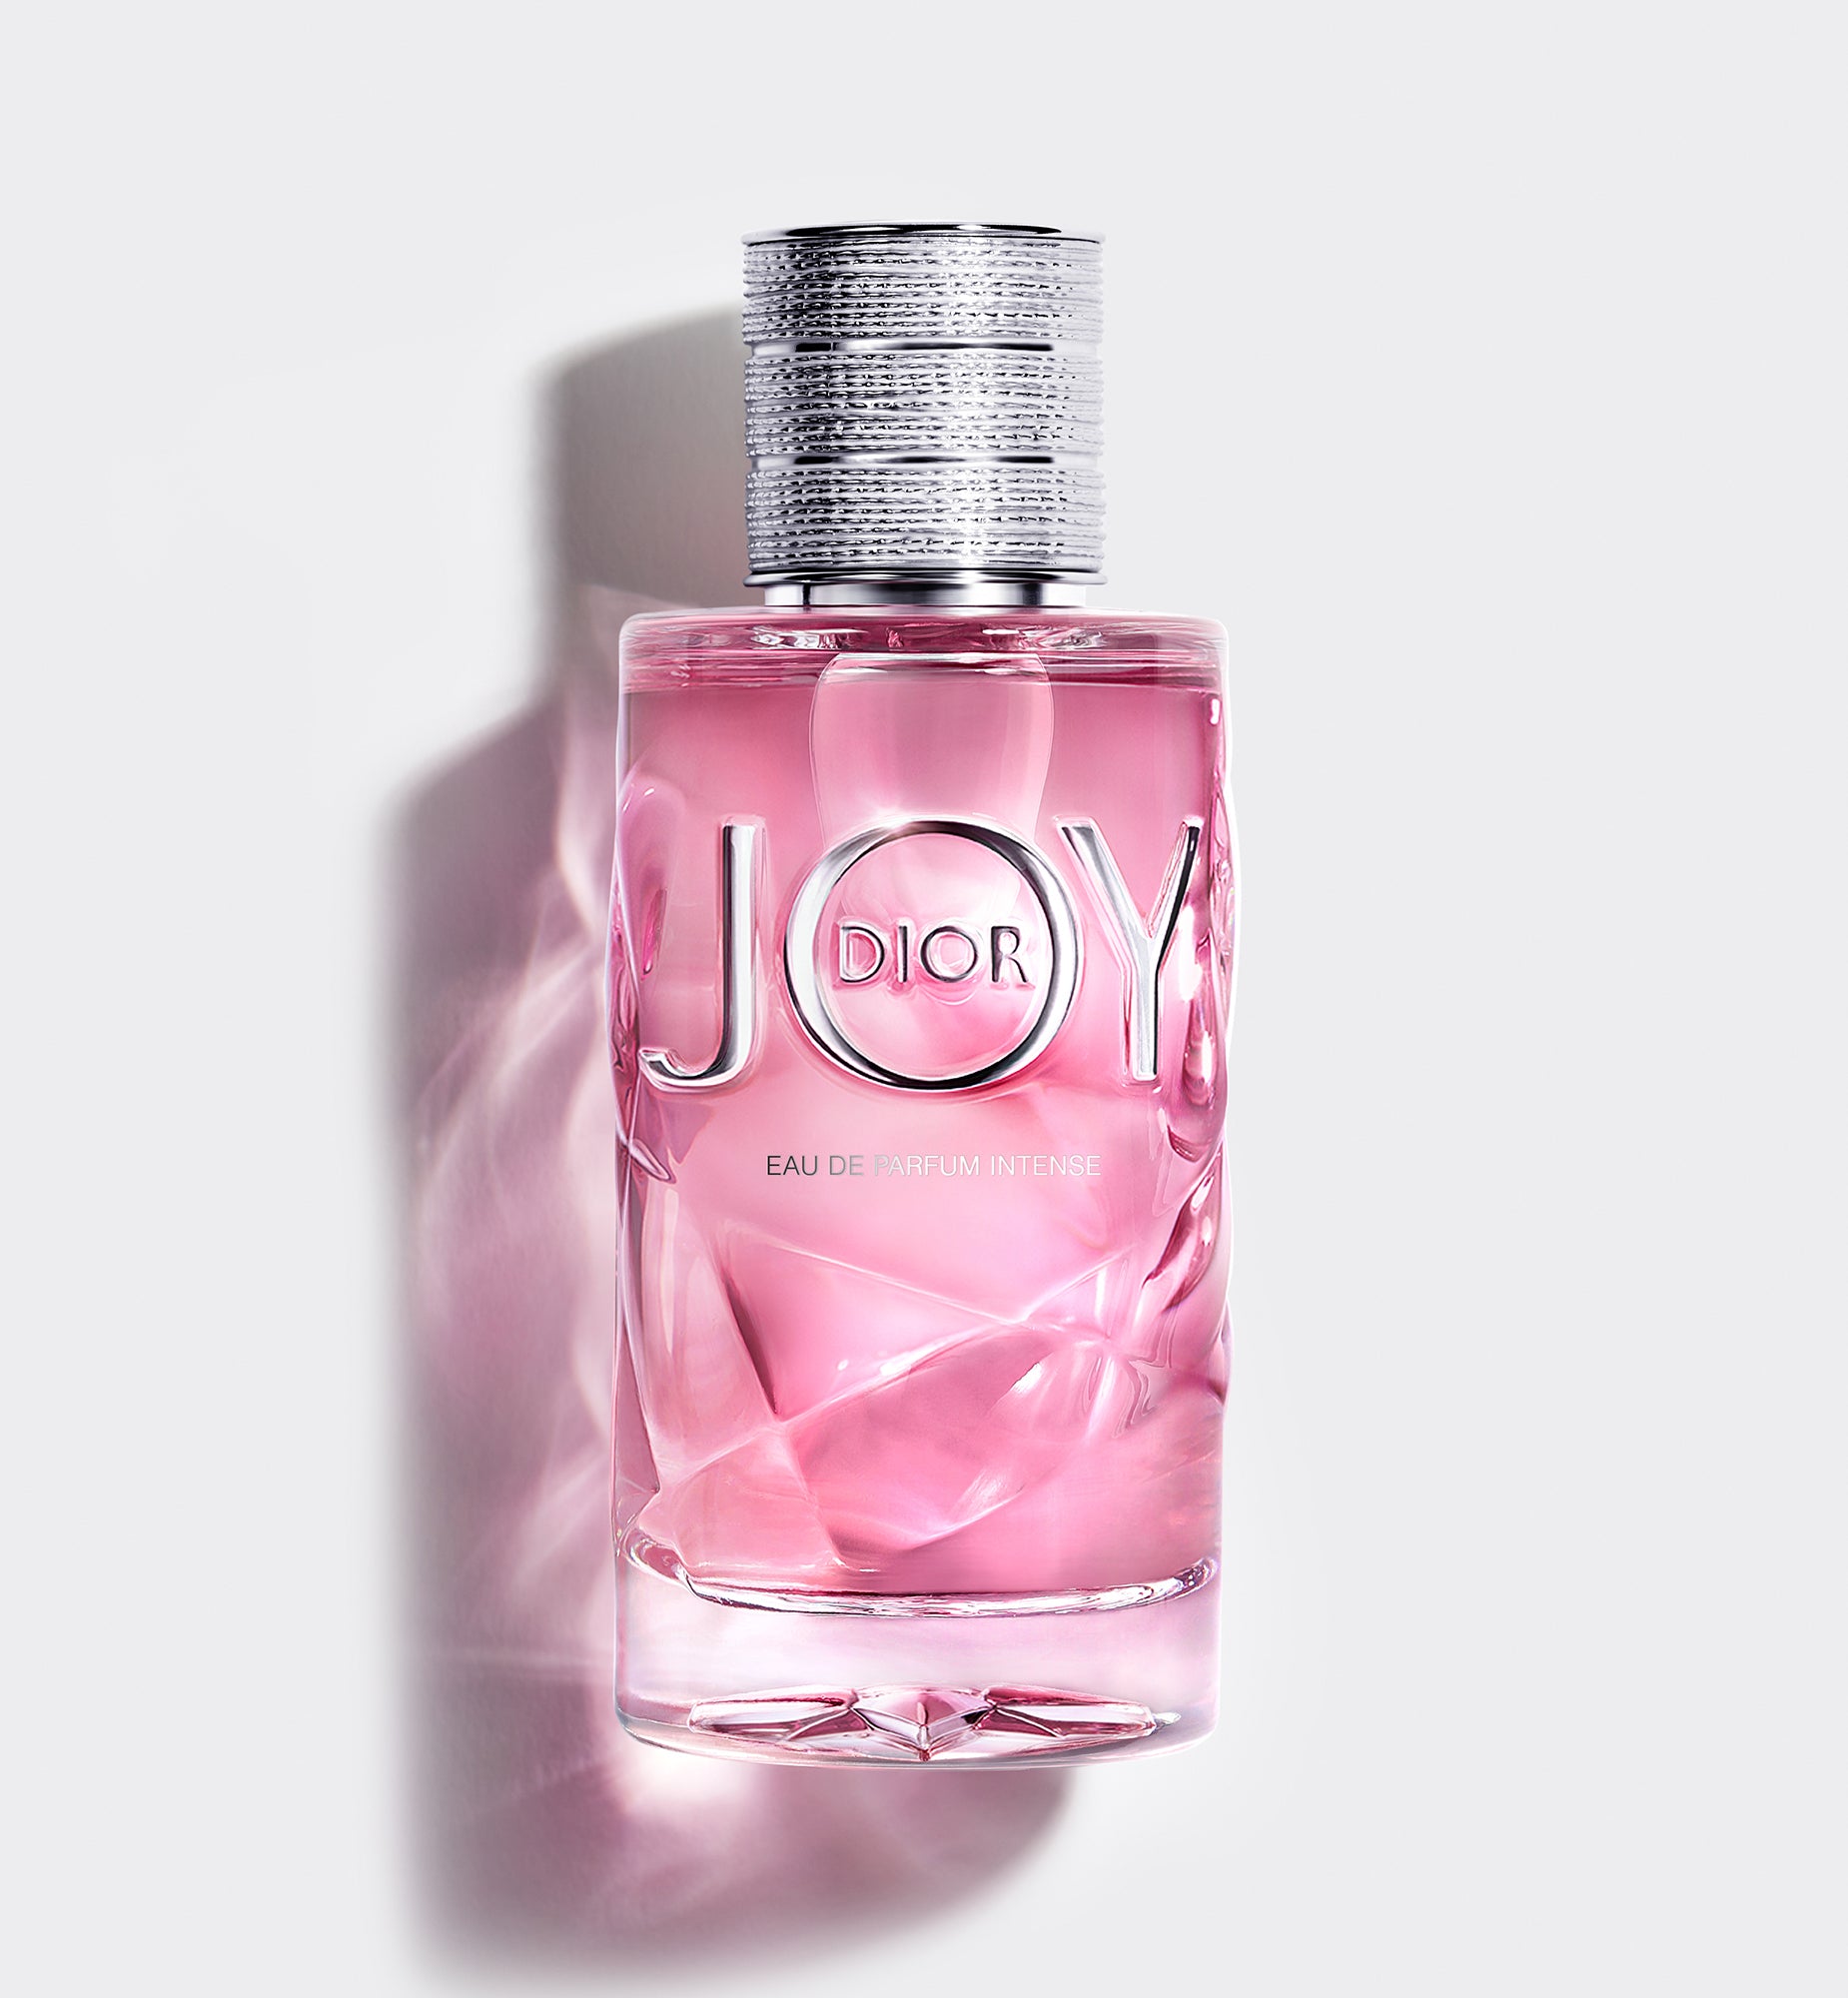 JOY BY DIOR—Eau de parfum intense—น้ำหอม Eau de parfum intense